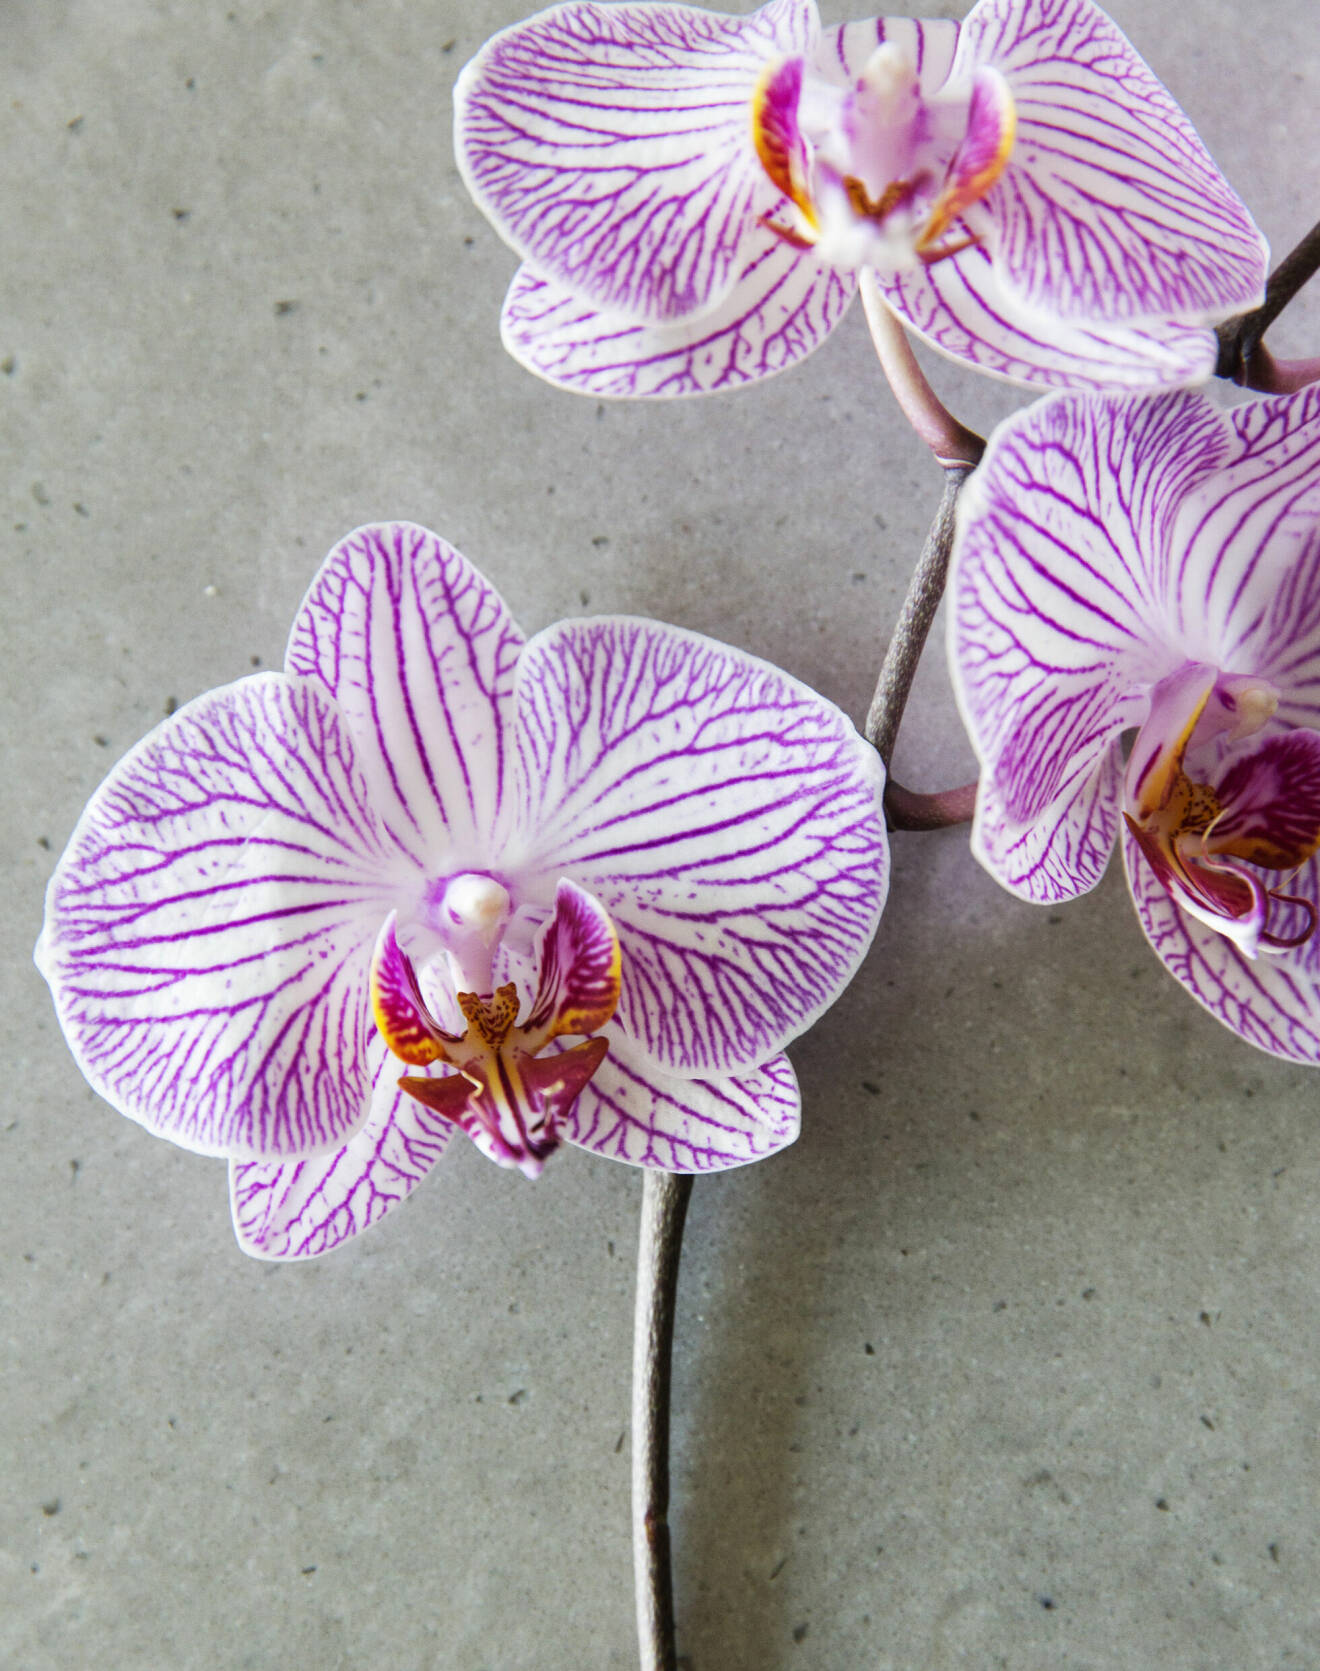 Det finns runt 25 000 sorters orkidéer. I svenska hem är brudorkidé, Phalaenopsis, överlägset populärast.